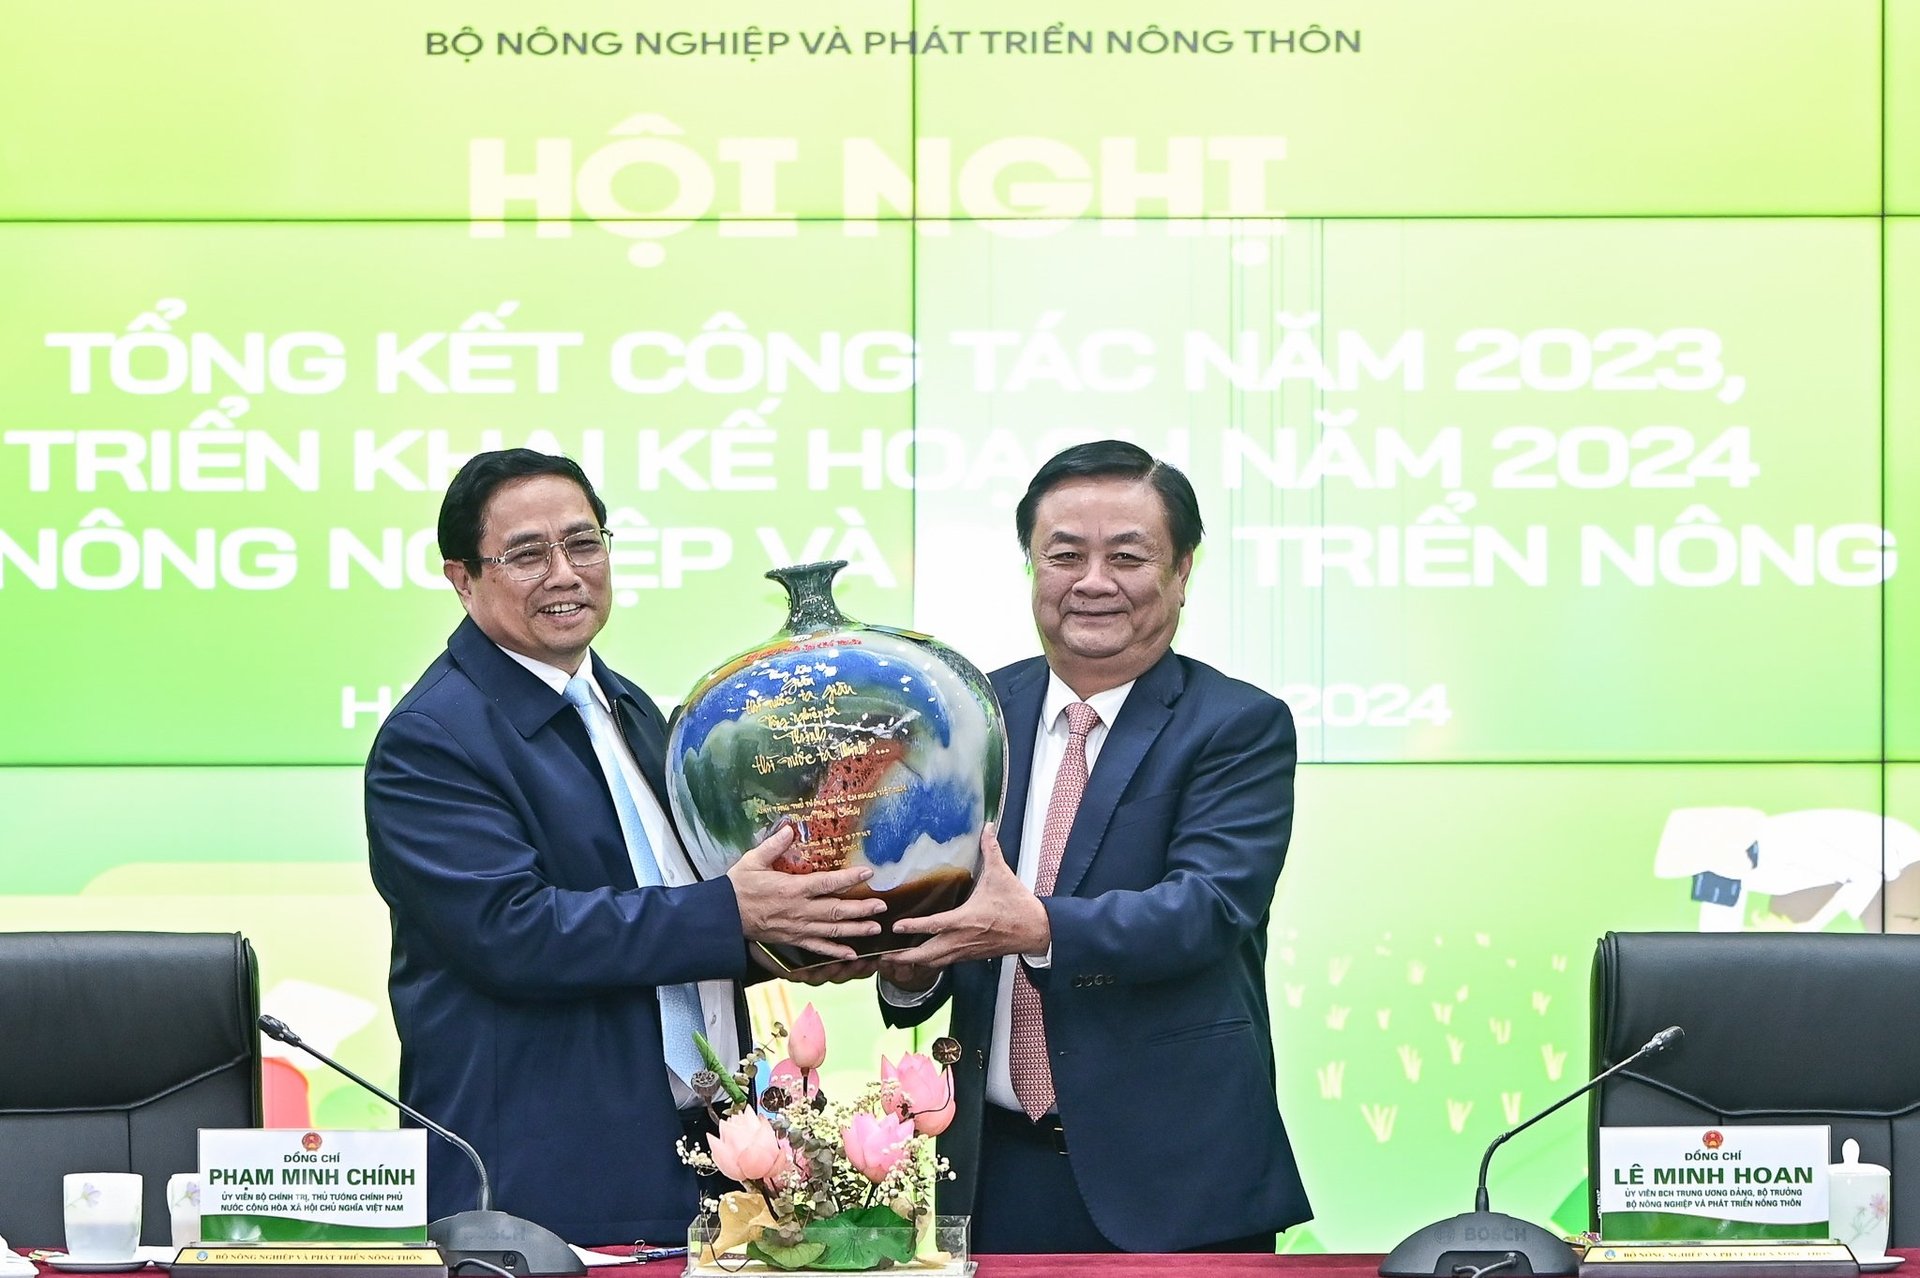 Bộ trưởng Lê Minh Hoan đại diện Bộ NN-PTNT tặng Thủ tướng Phạm Minh Chính bình gốm với thông điệp 'Chạm để kết nối'.